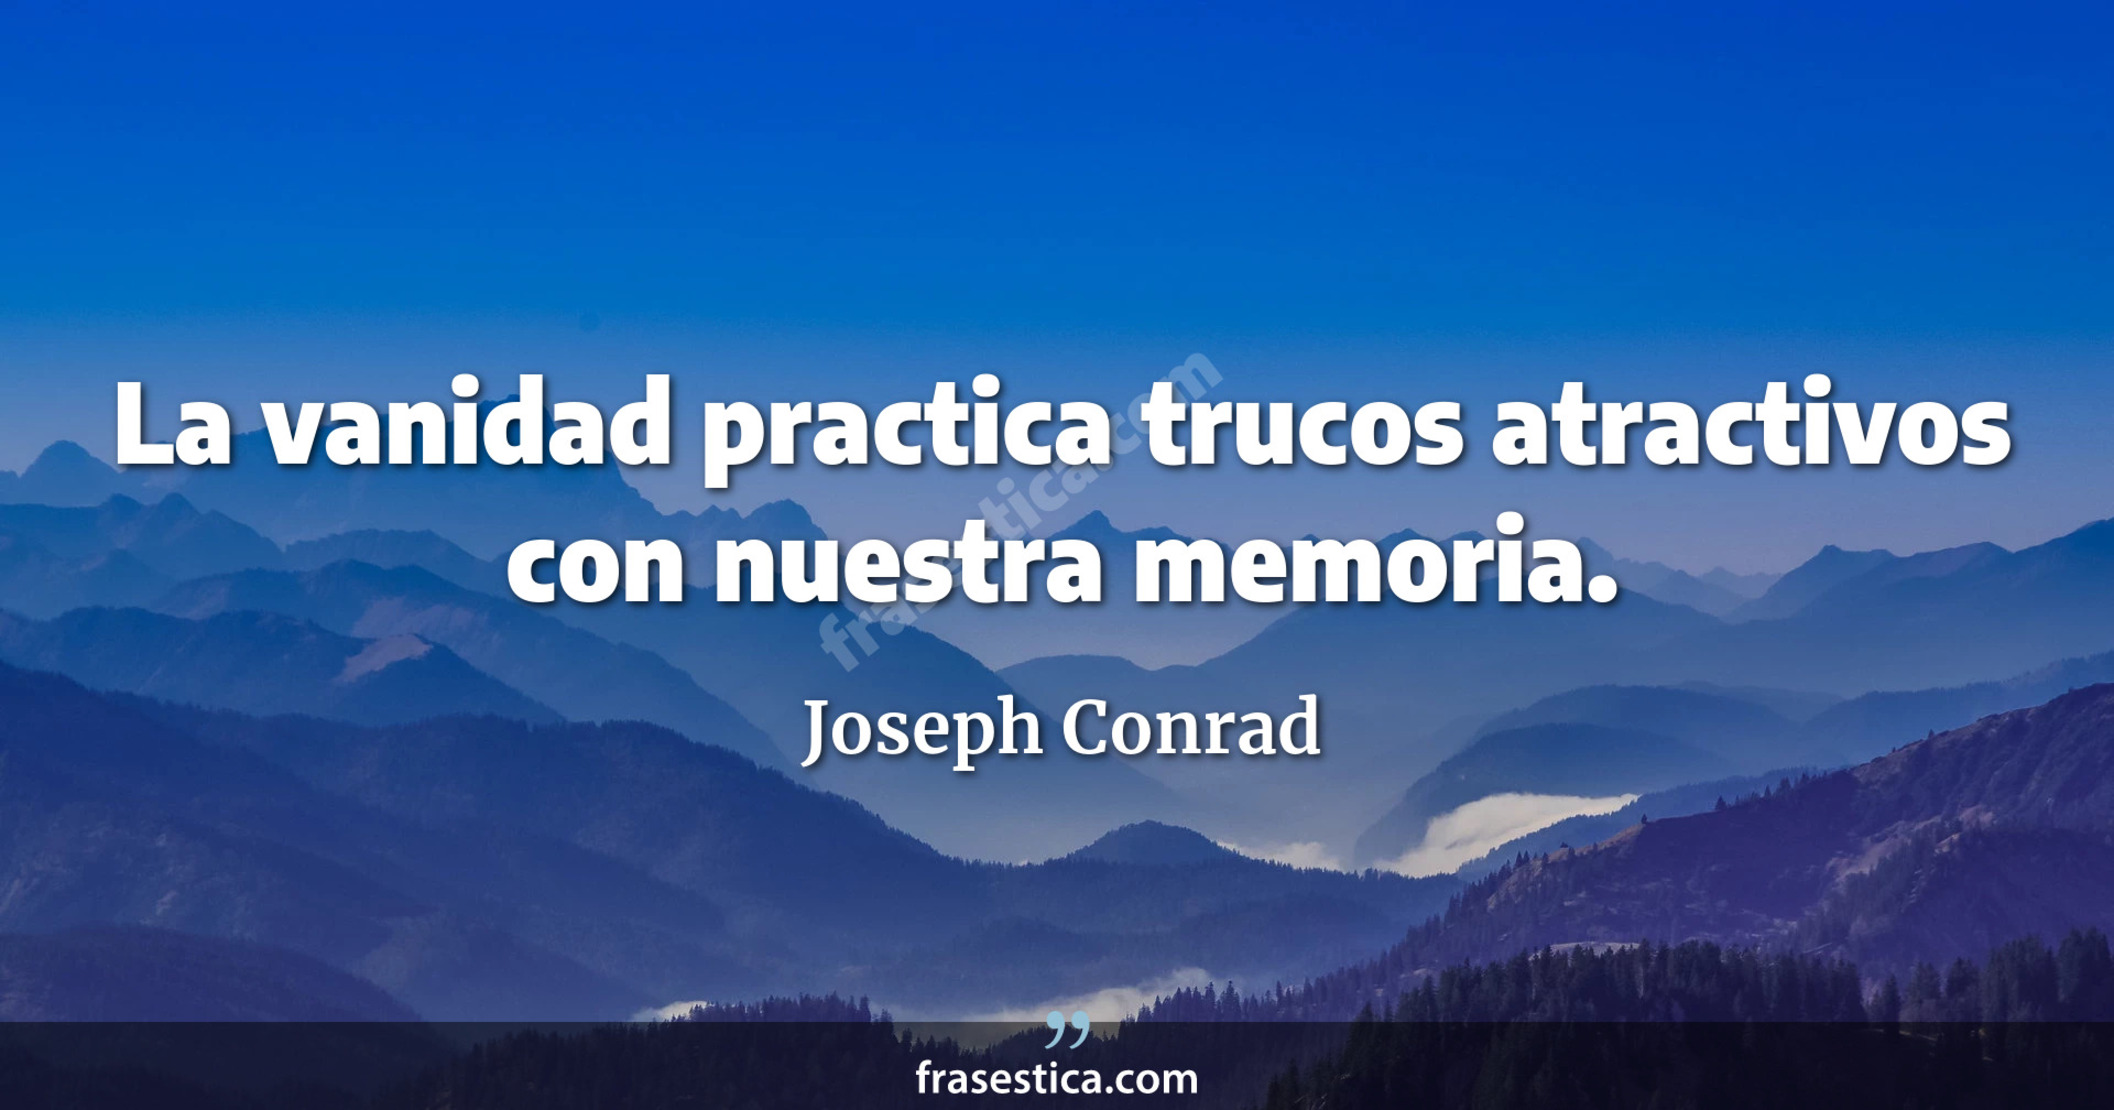 La vanidad practica trucos atractivos con nuestra memoria. - Joseph Conrad